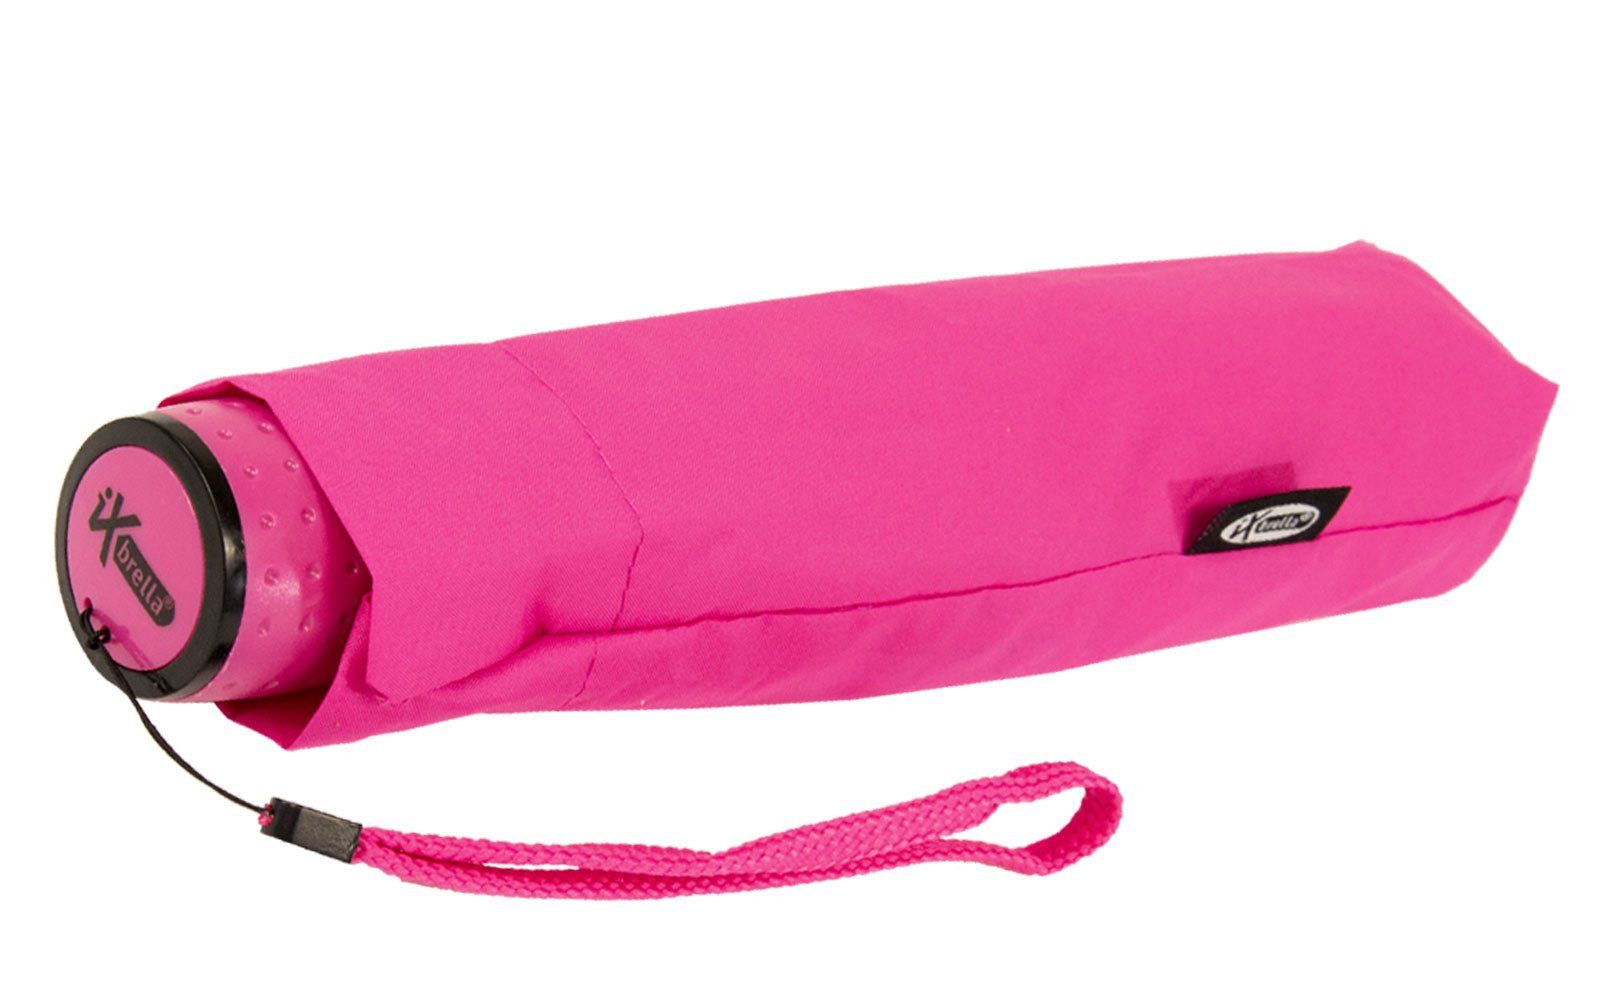 extra Safety reflektierend Mini Reflex Taschenregenschirm neon-pink Kinderschirm leicht, iX-brella